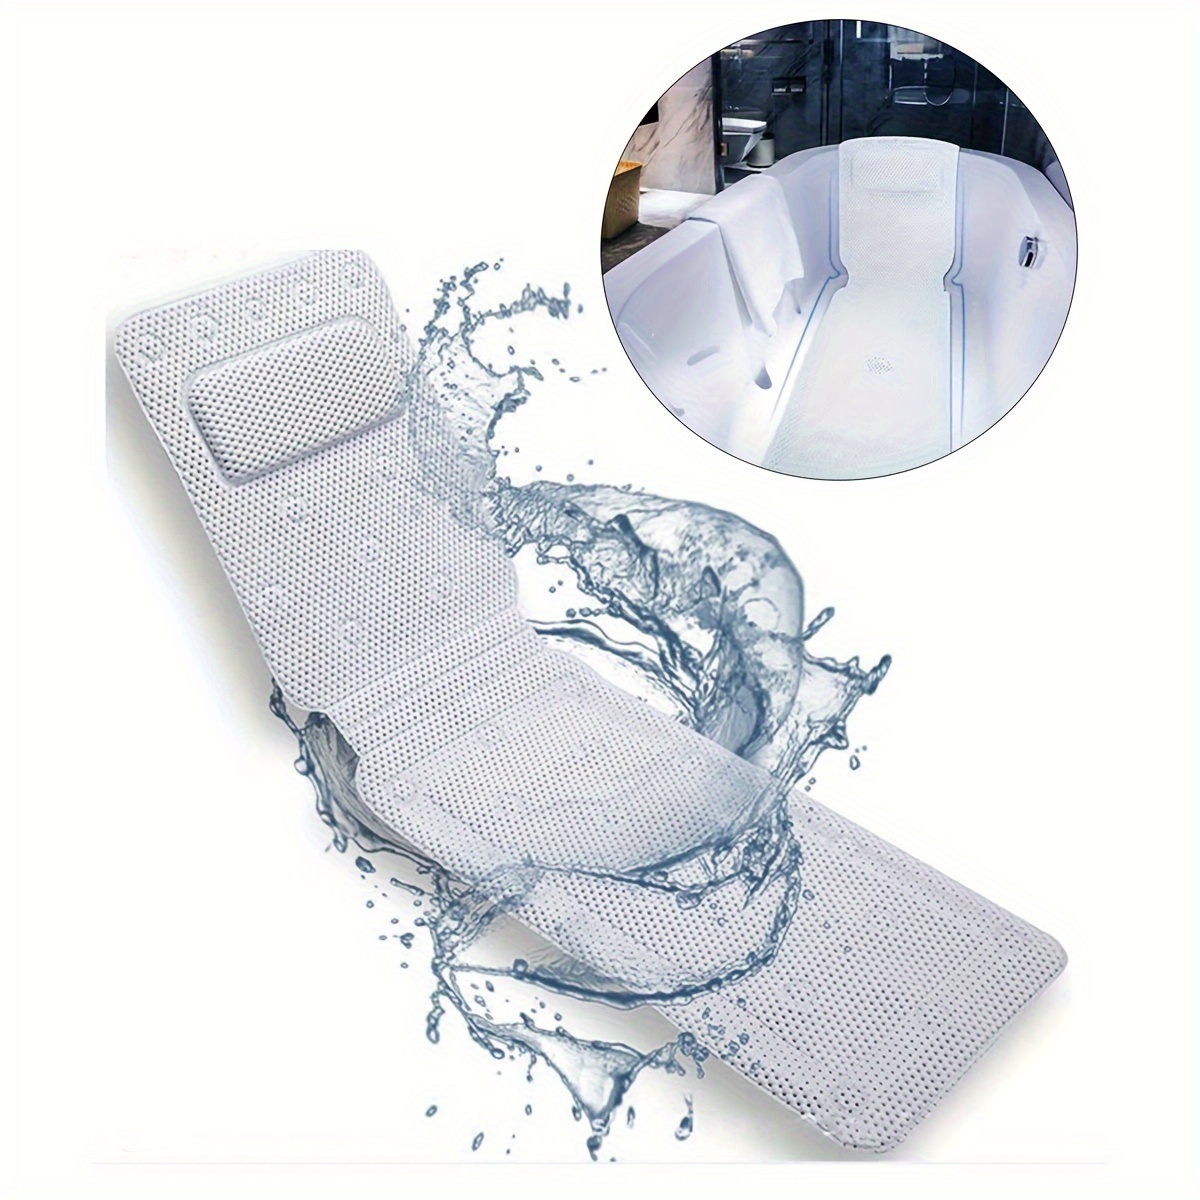 Tappetino per vasca da bagno antiscivolo traspirante in PVC, con ventosa e  cuscino tappetino antiscivolo, adatto per bagno e vasca - AliExpress